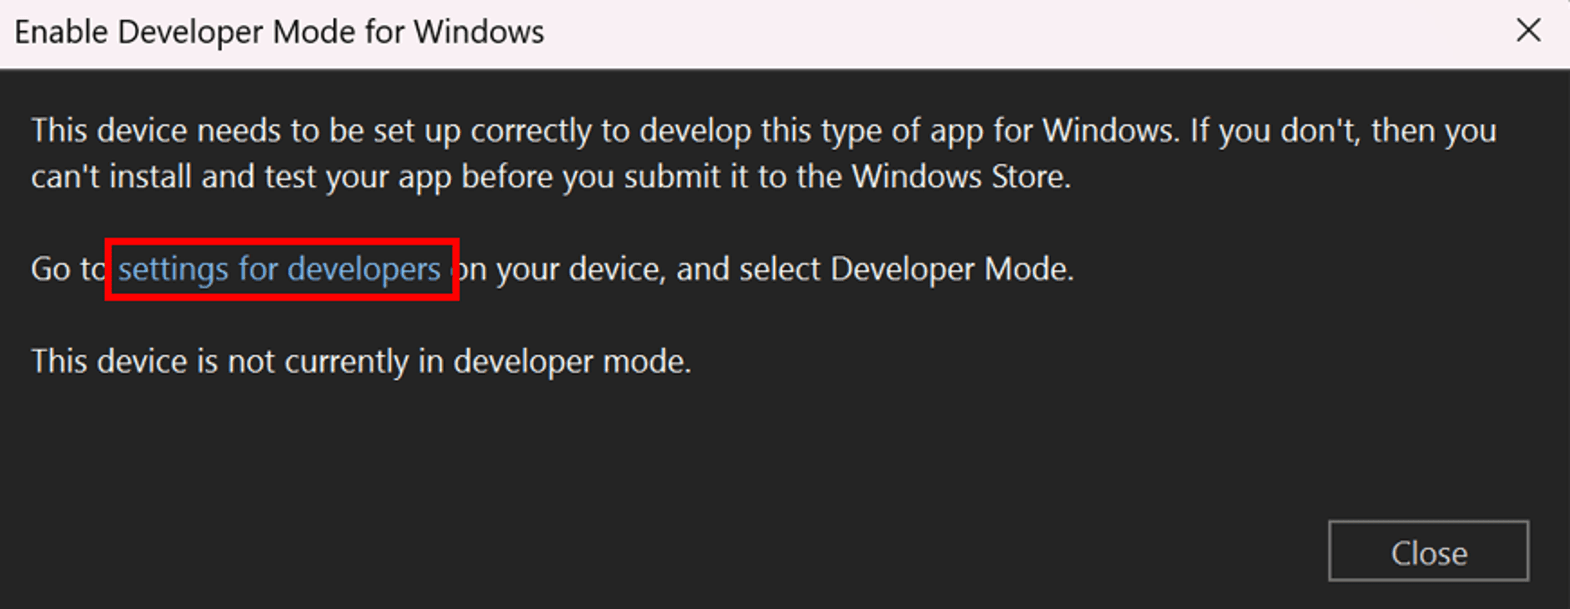 [Windows の開発者モードを有効にする] ダイアログを有効にします。